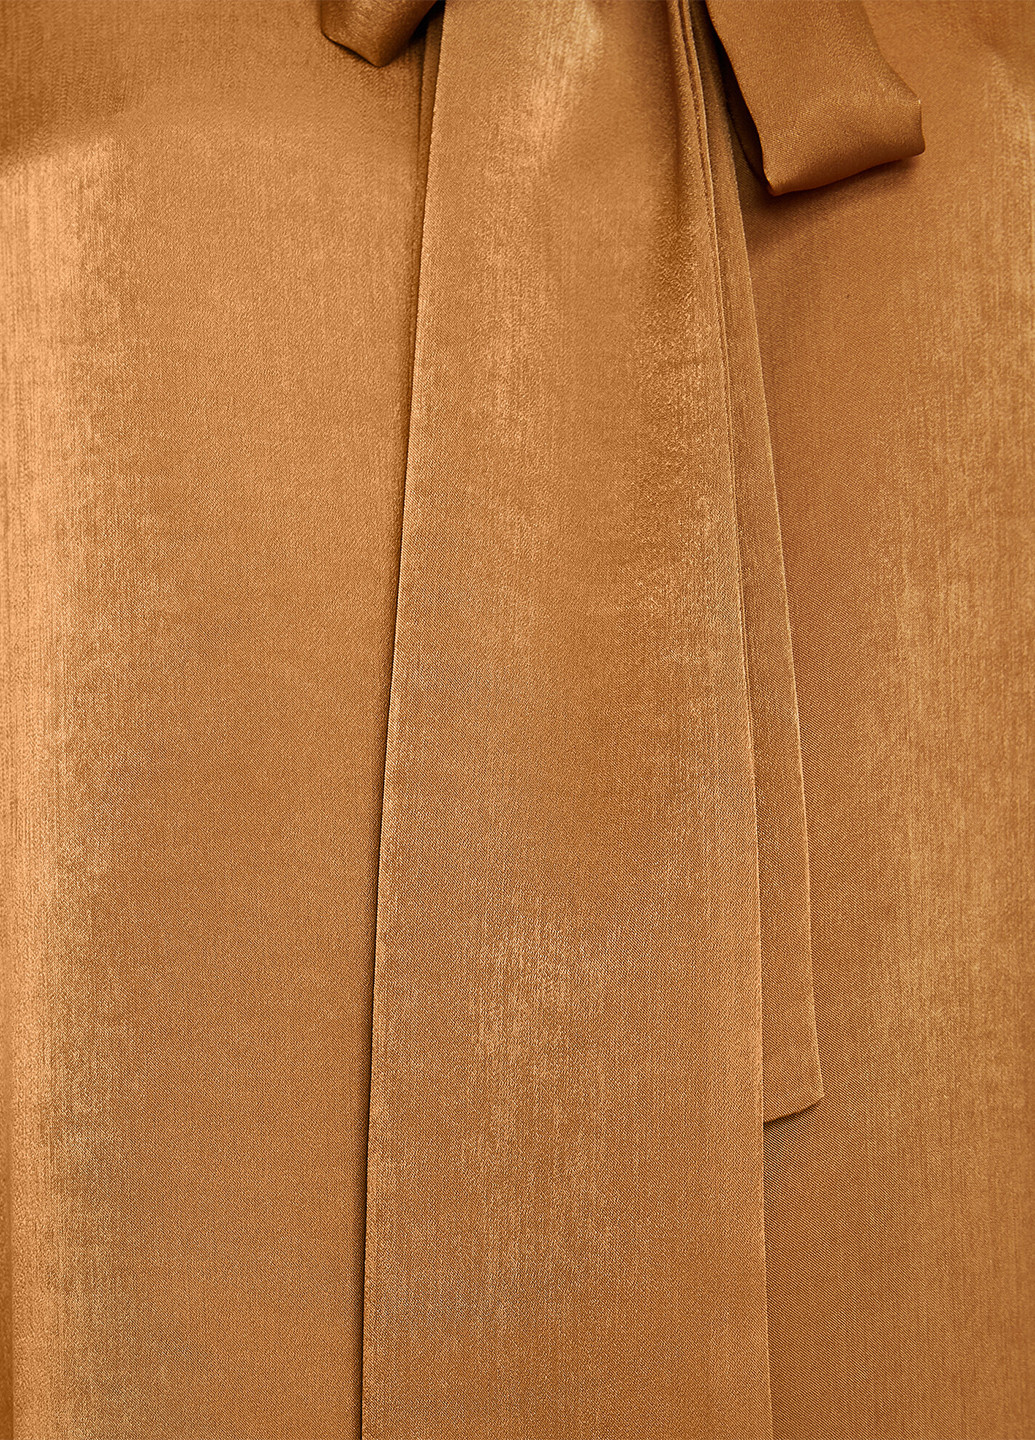 Светло-коричневая демисезонная блуза KOTON